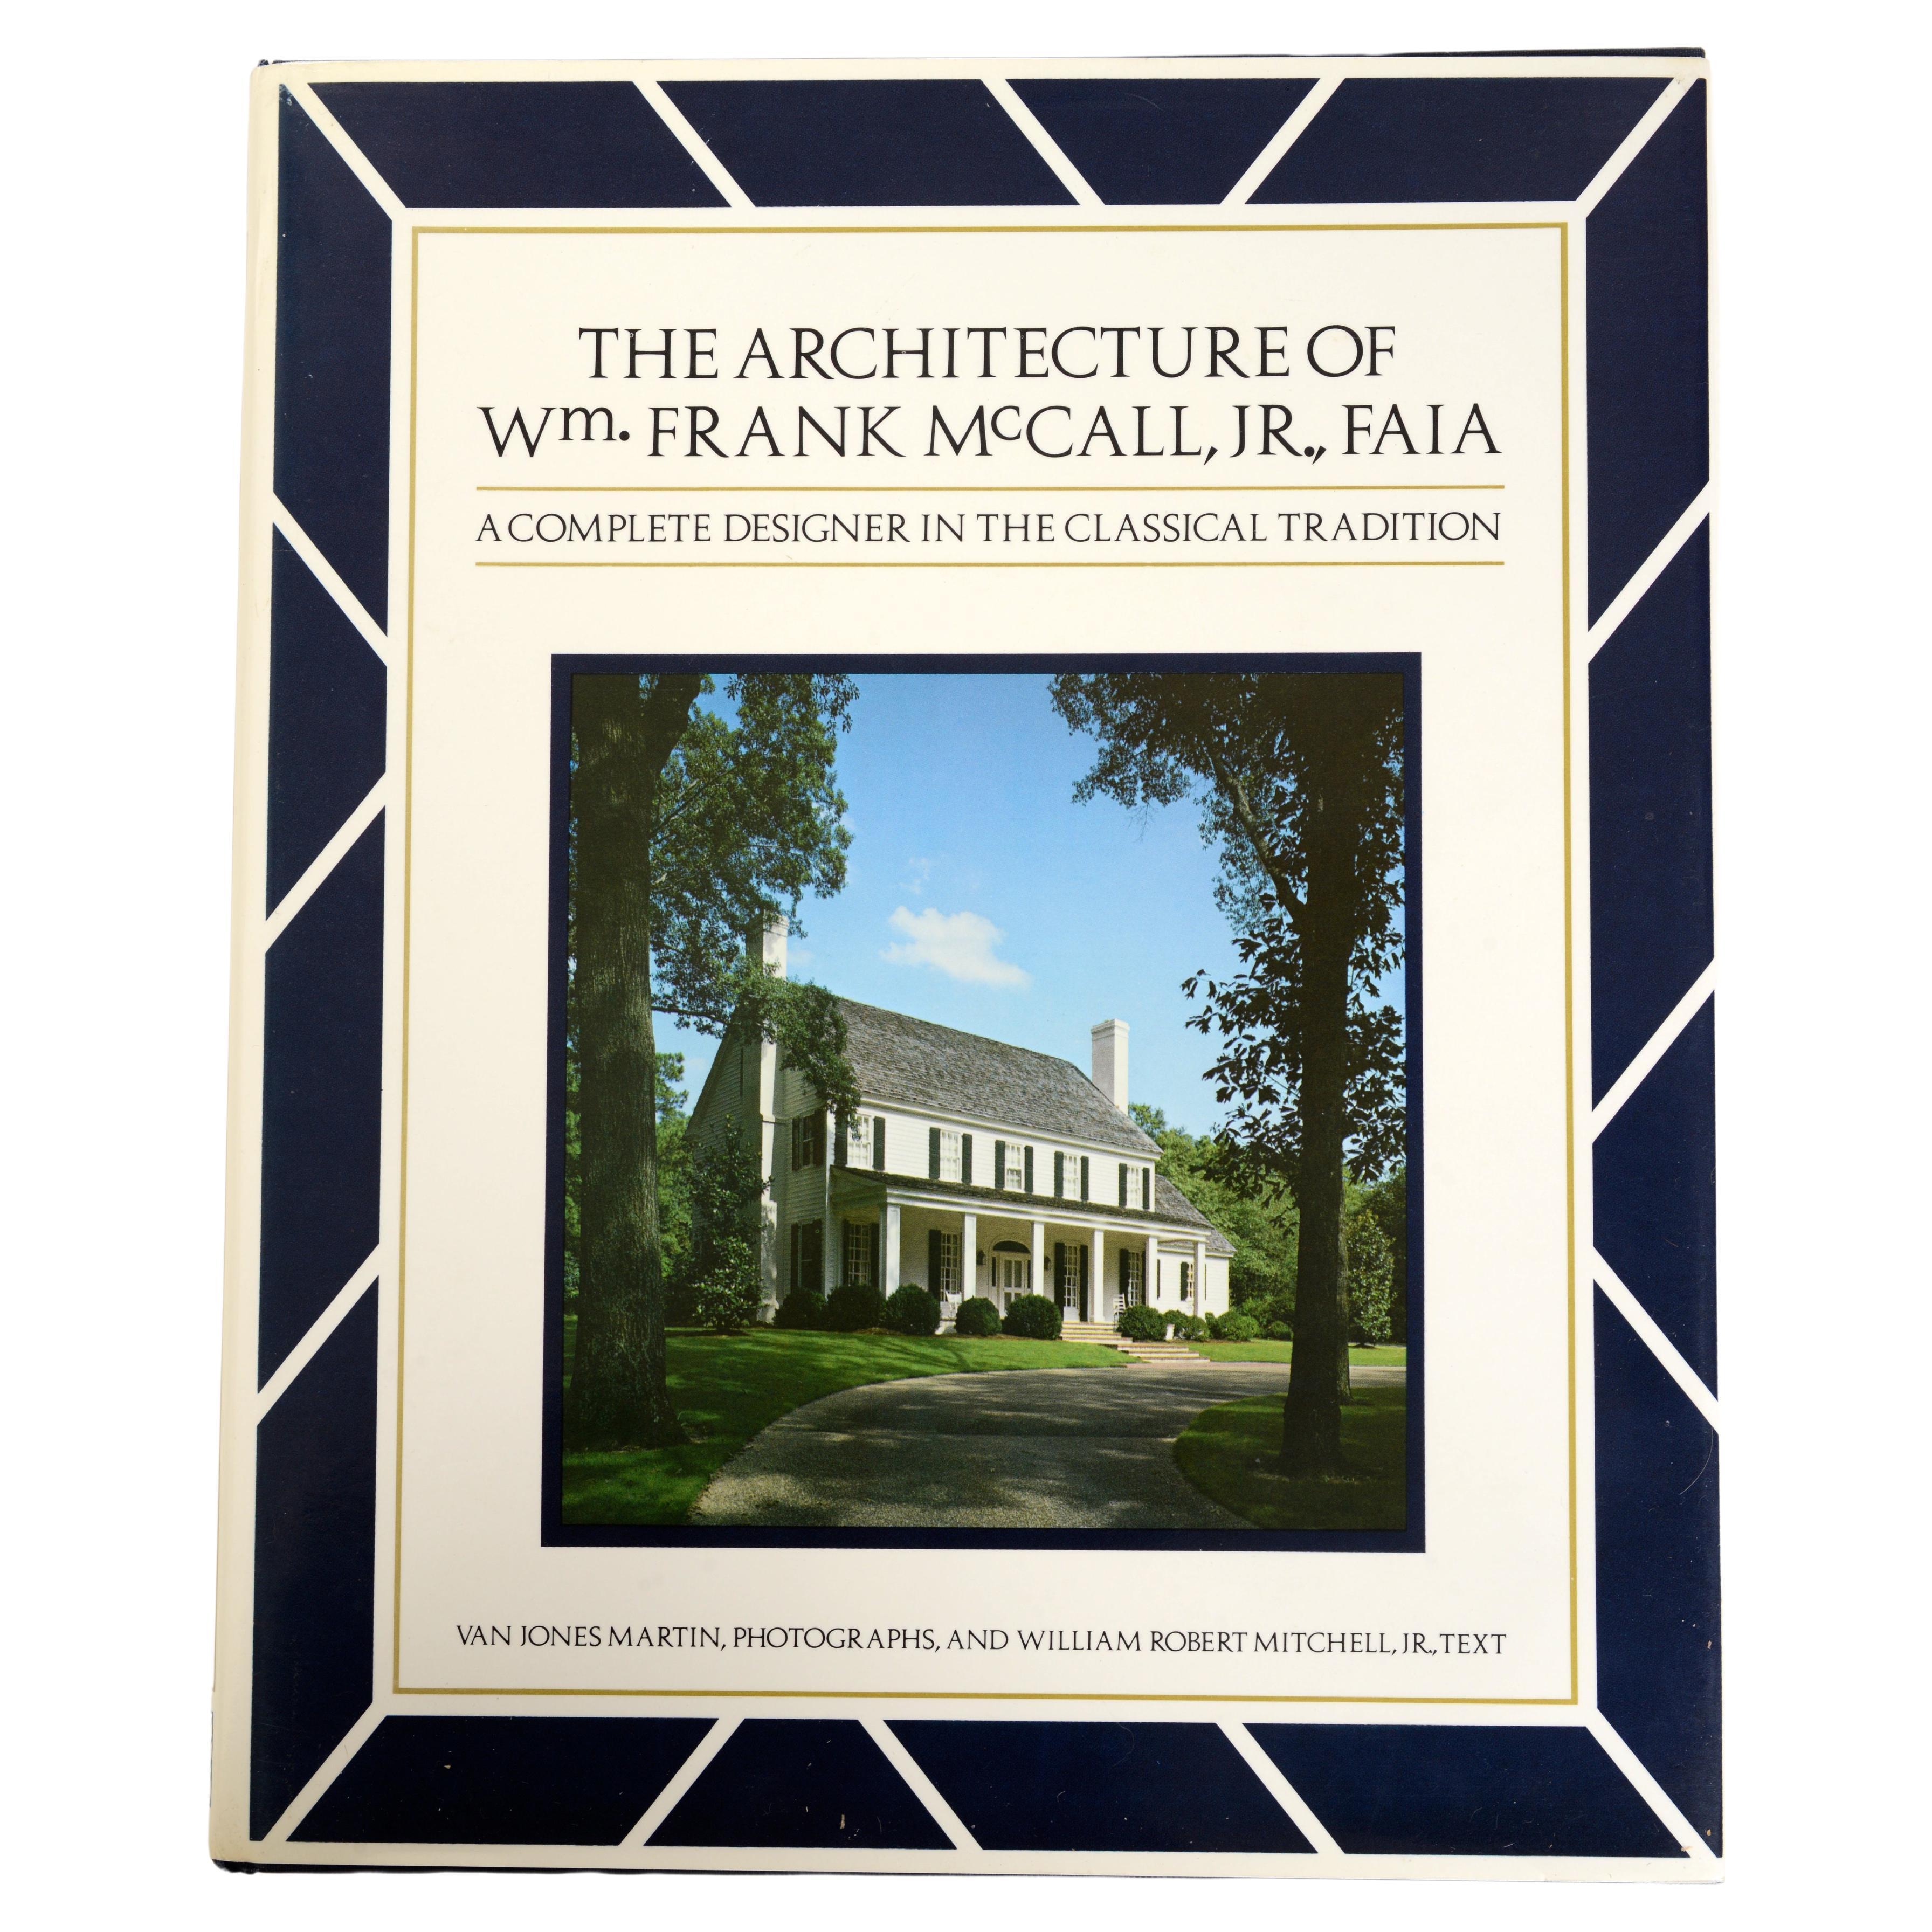 Architektur von William McCall, Jr., Designer in der klassischen Tradition